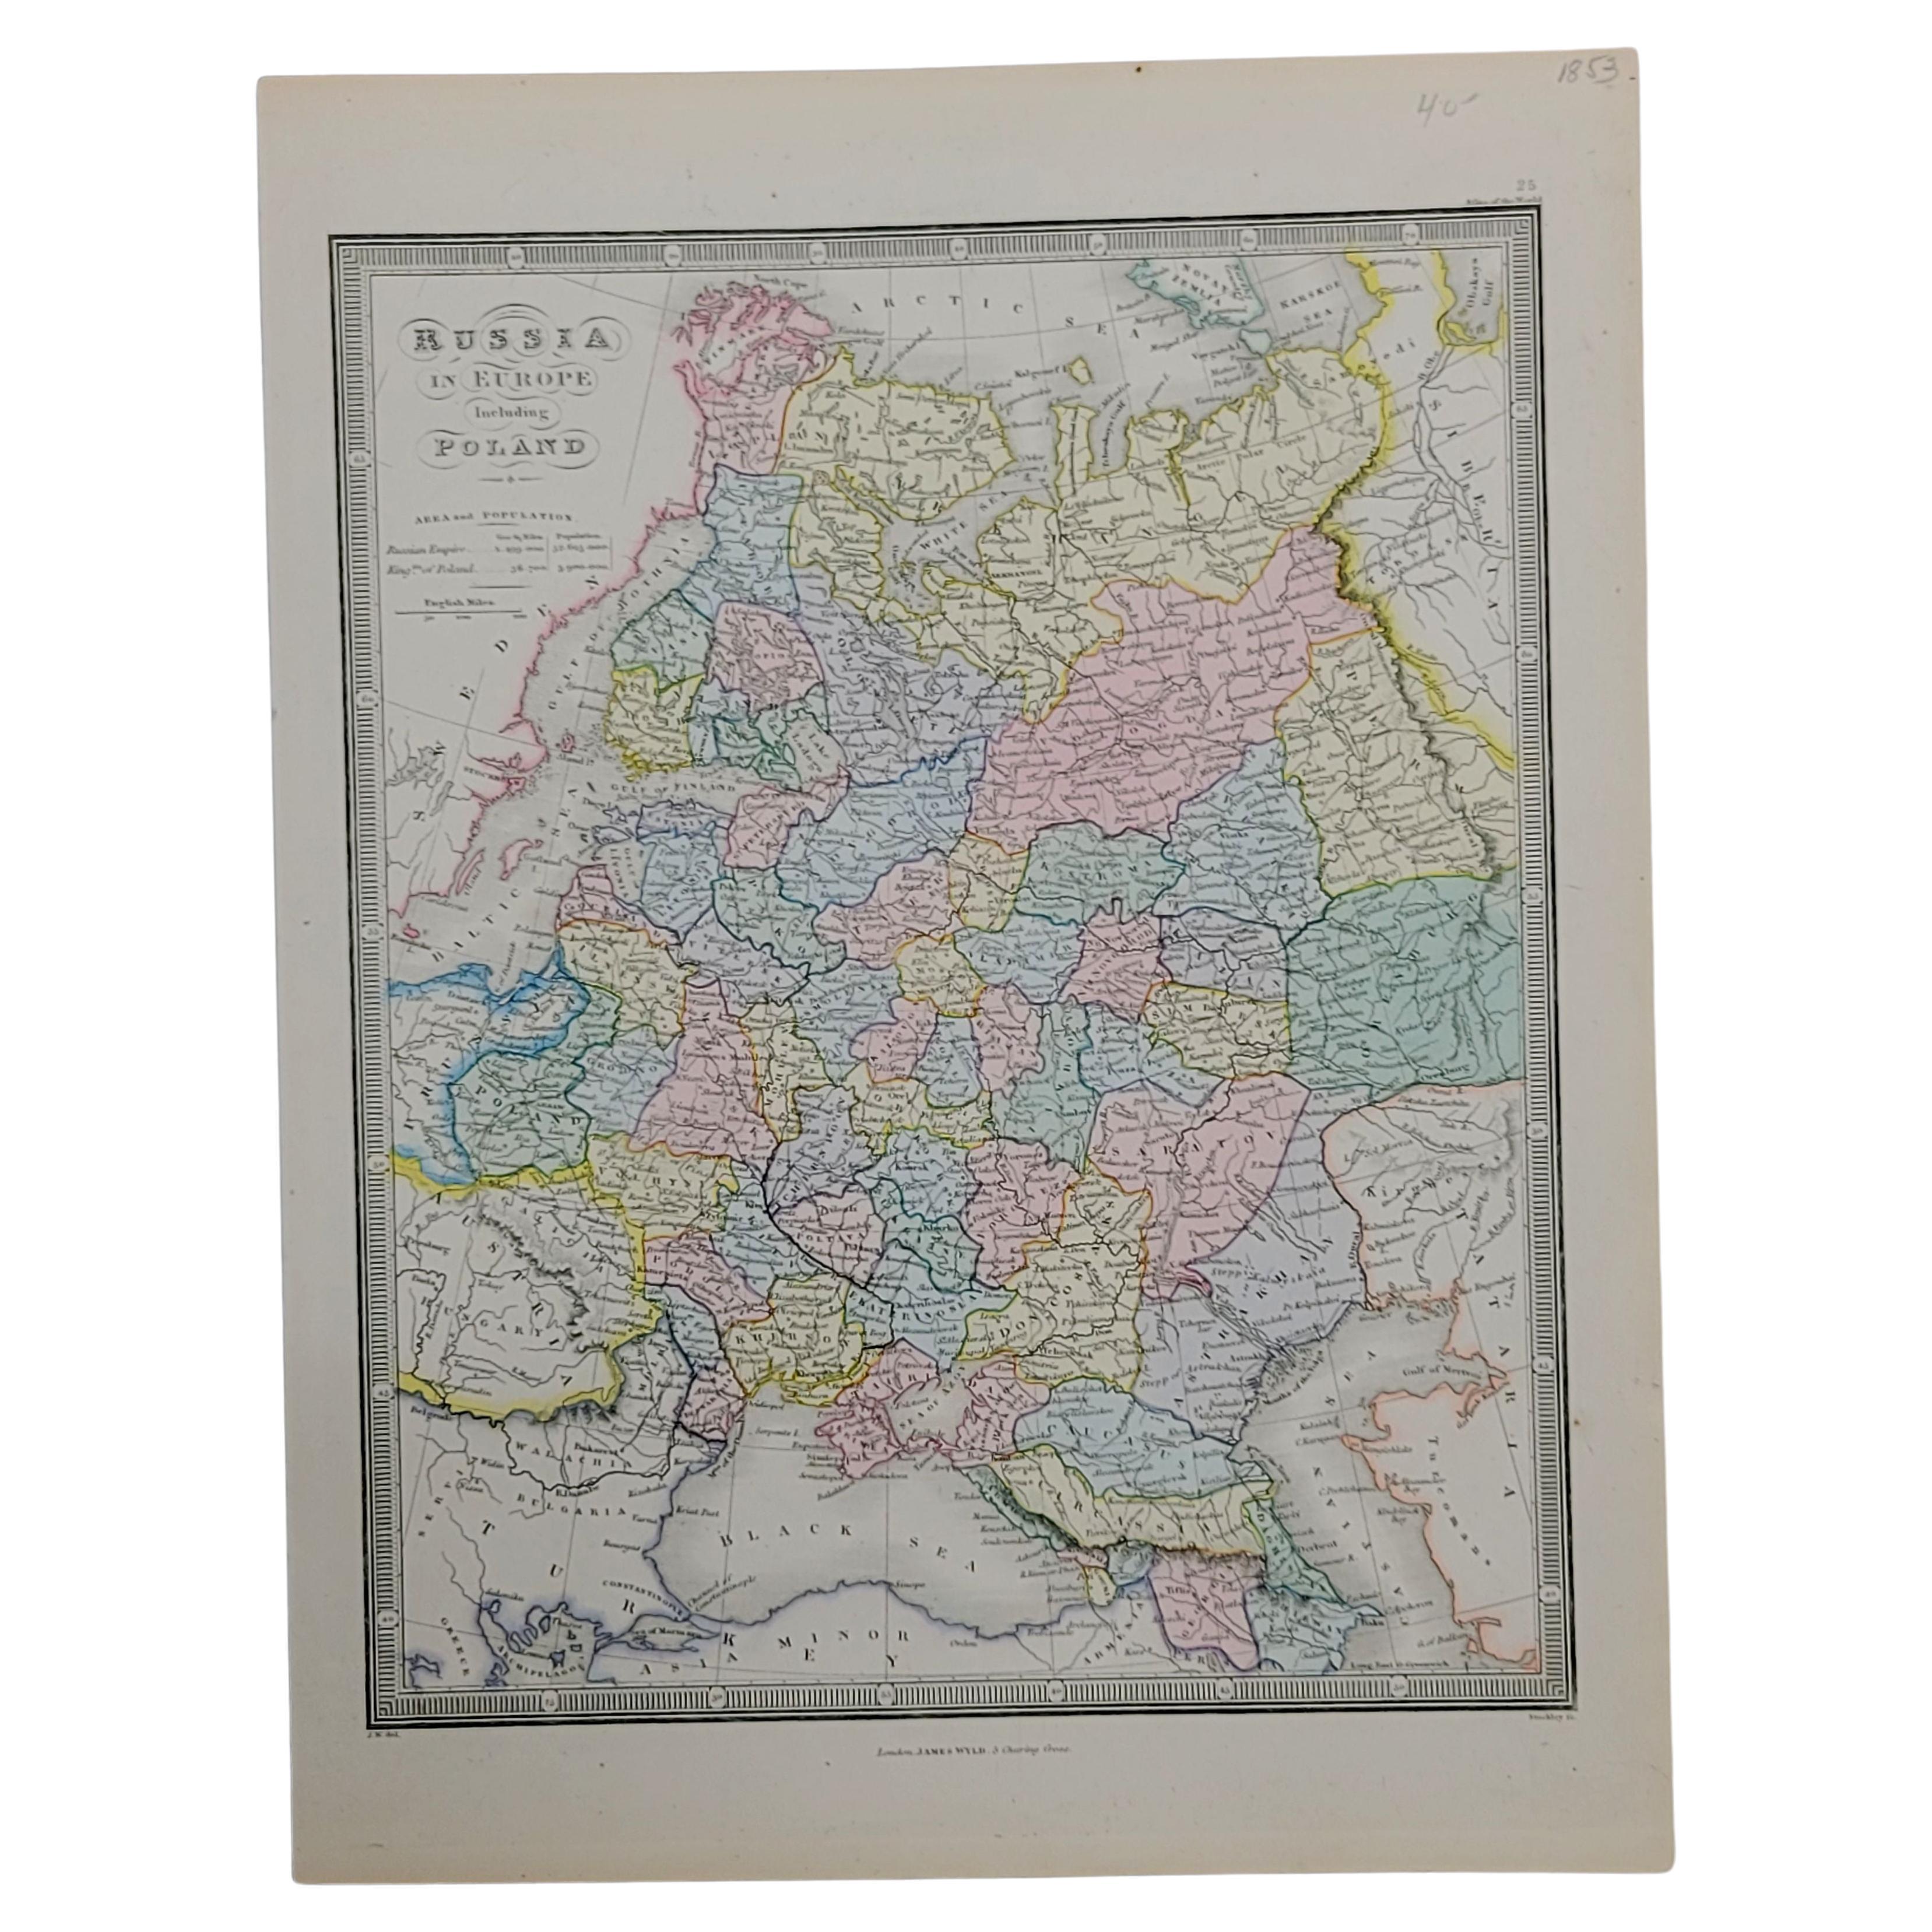 1853 Karte von „Russia in Europa, einschließlich Polen“ Ric.r016